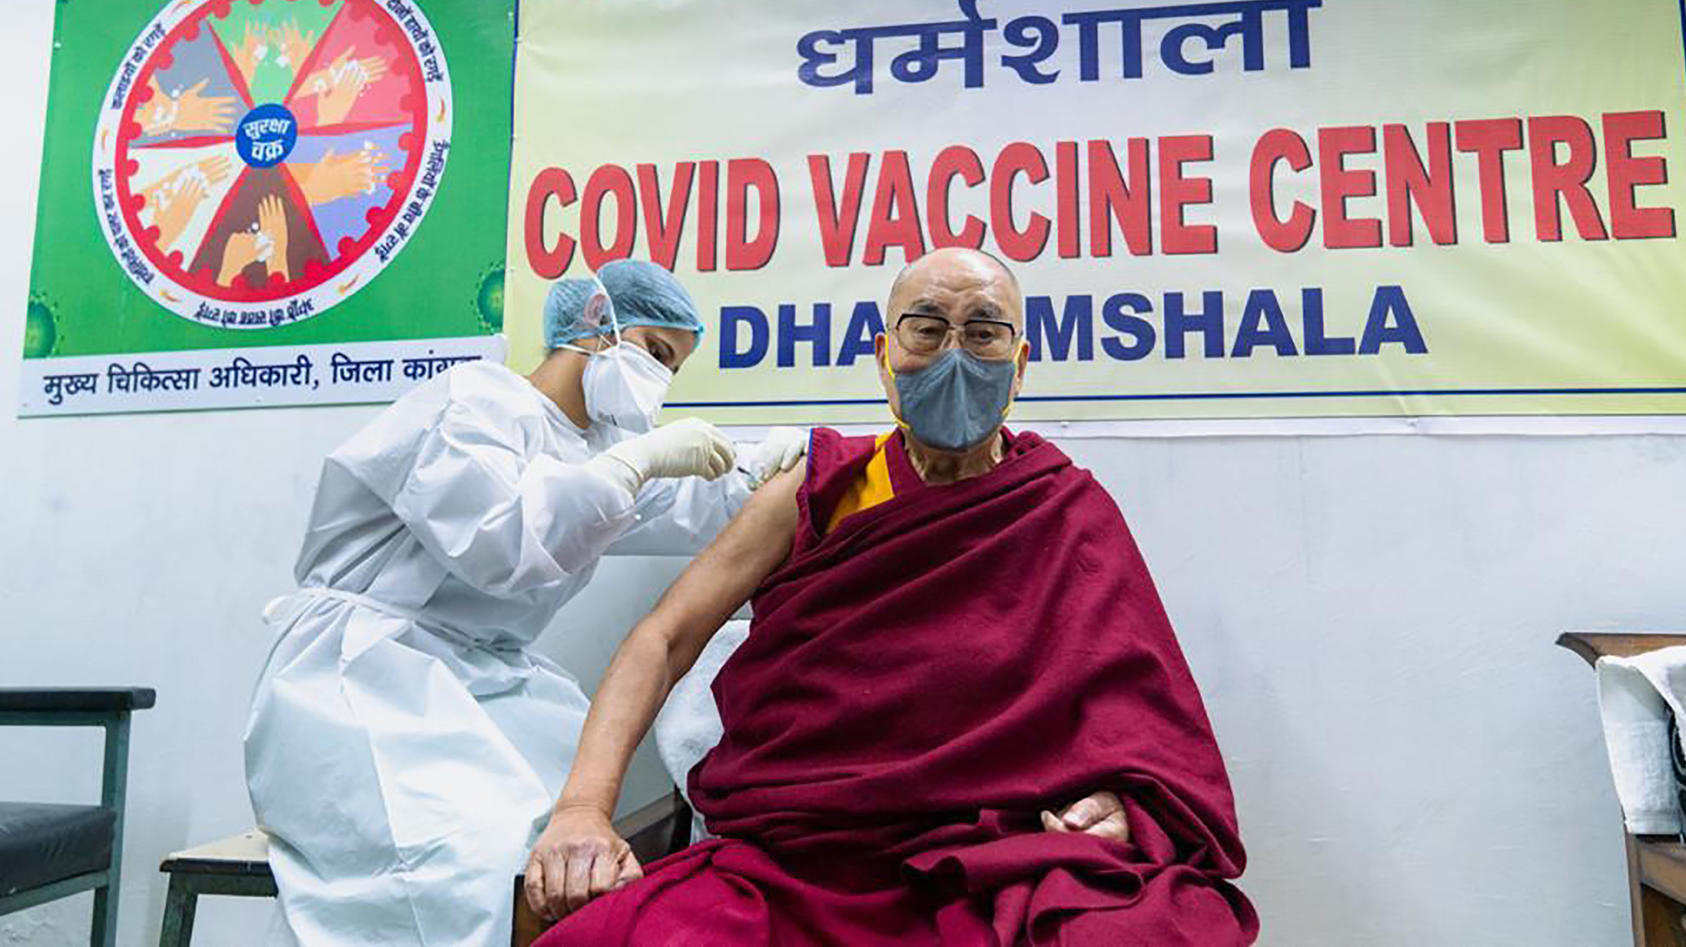 Der Dalai Lama ist am Samstag gegen das Coronavirus geimpft worden.